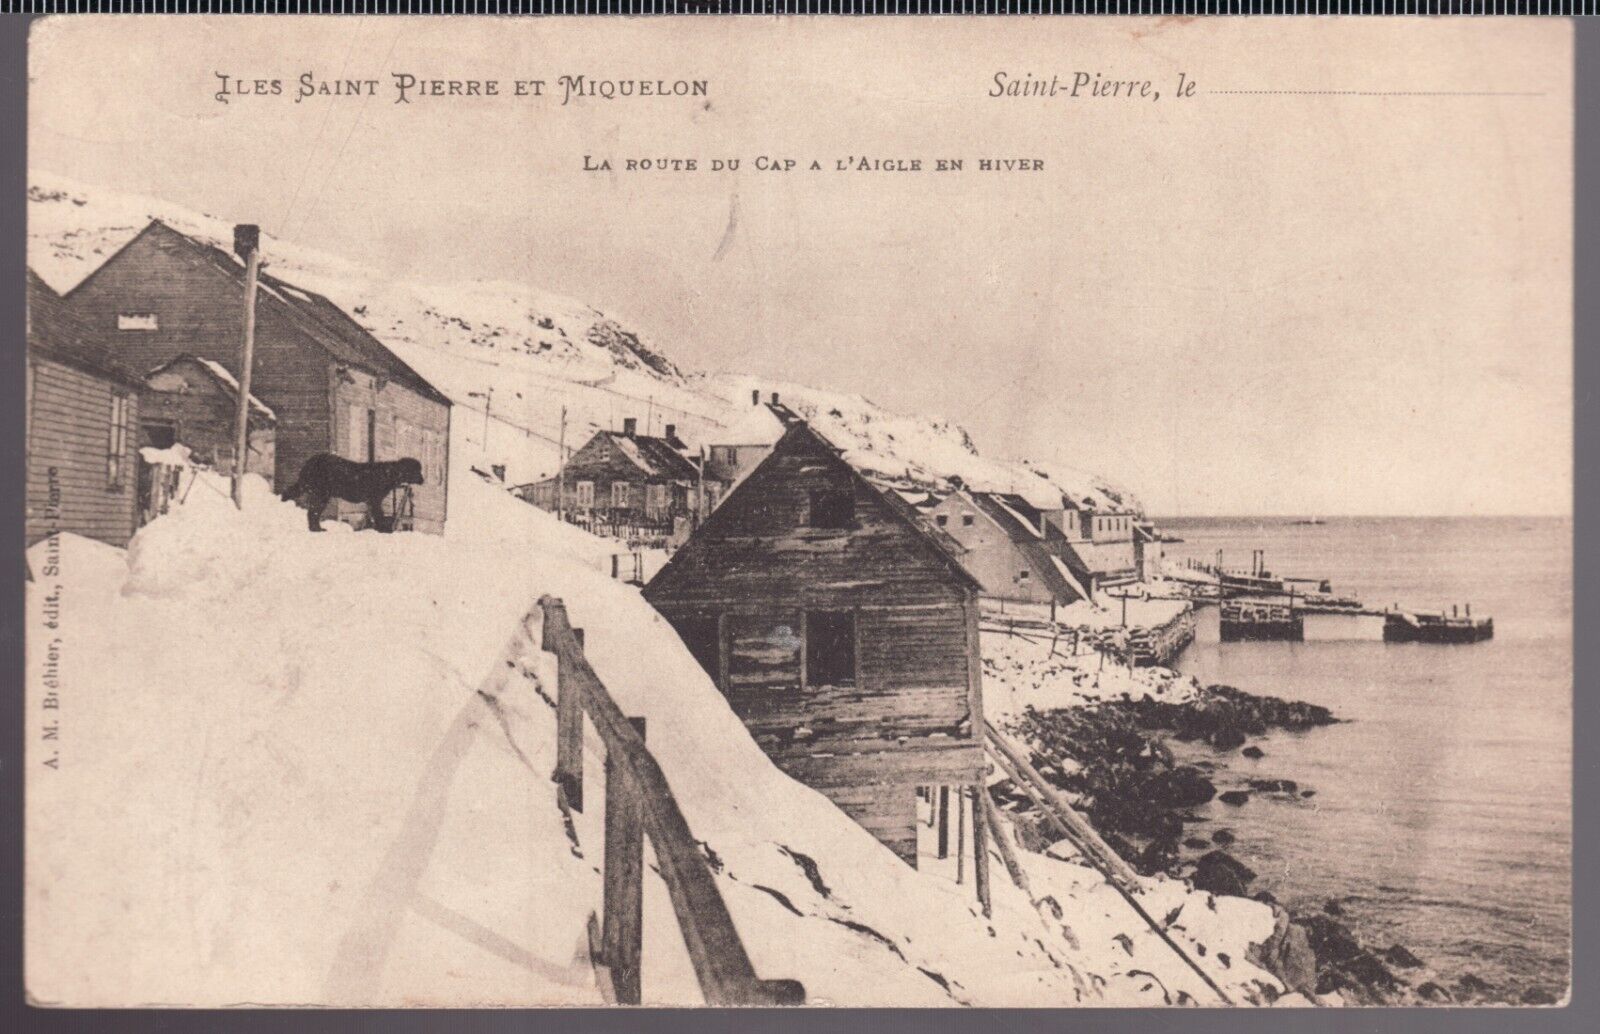 c.1910 Postcard - unposted - St-Pierre et Miquelon - Road to the Cape.